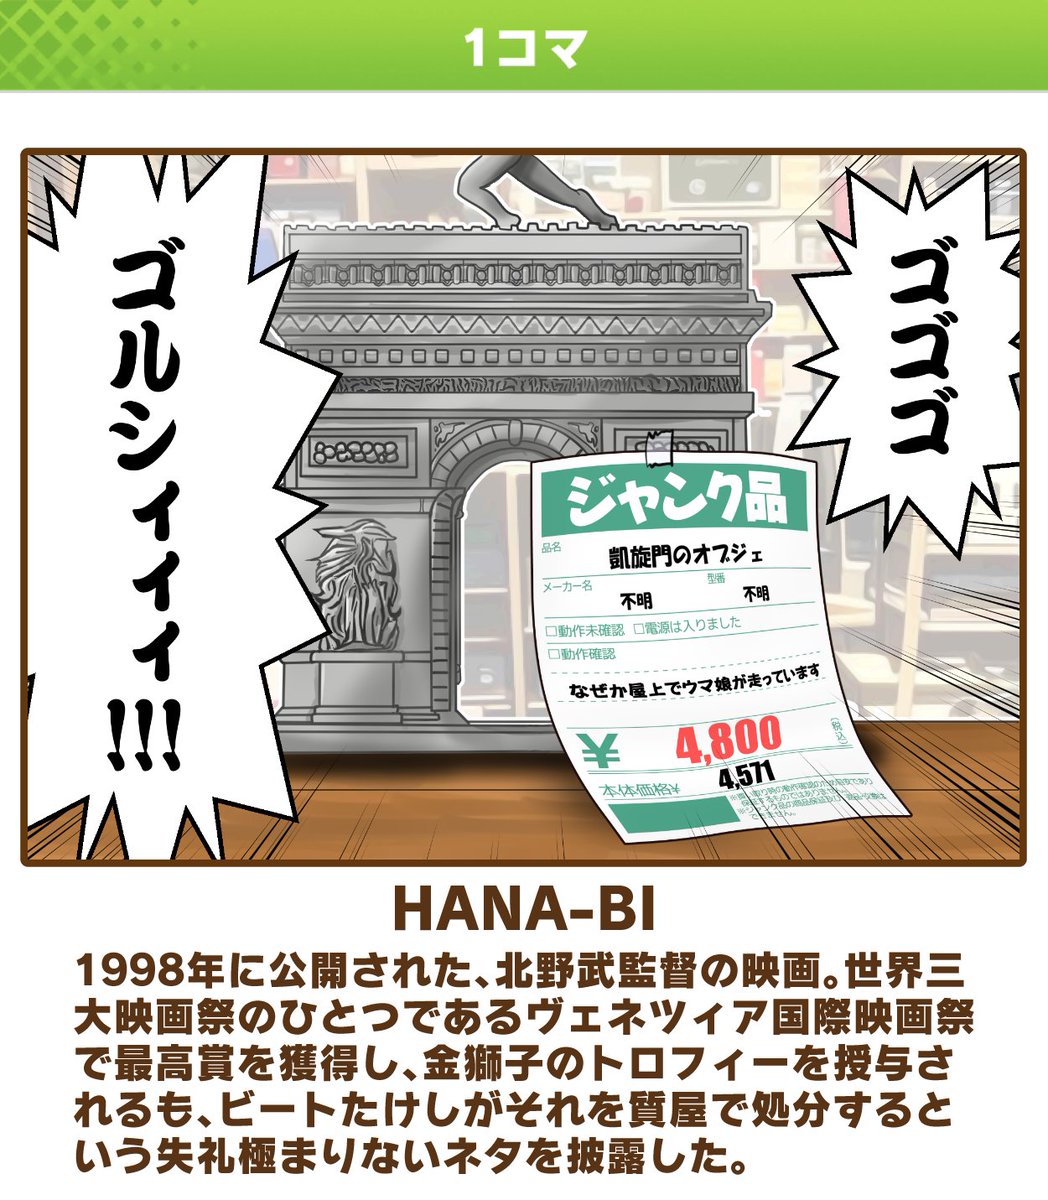 ウマ娘クラシックダービー「HANA-BI」

商品知識の乏しい店員が買い取りを担当しているハードオフは掘り出し物が多いので神。

#ウマ娘 #漫画 #北野武 